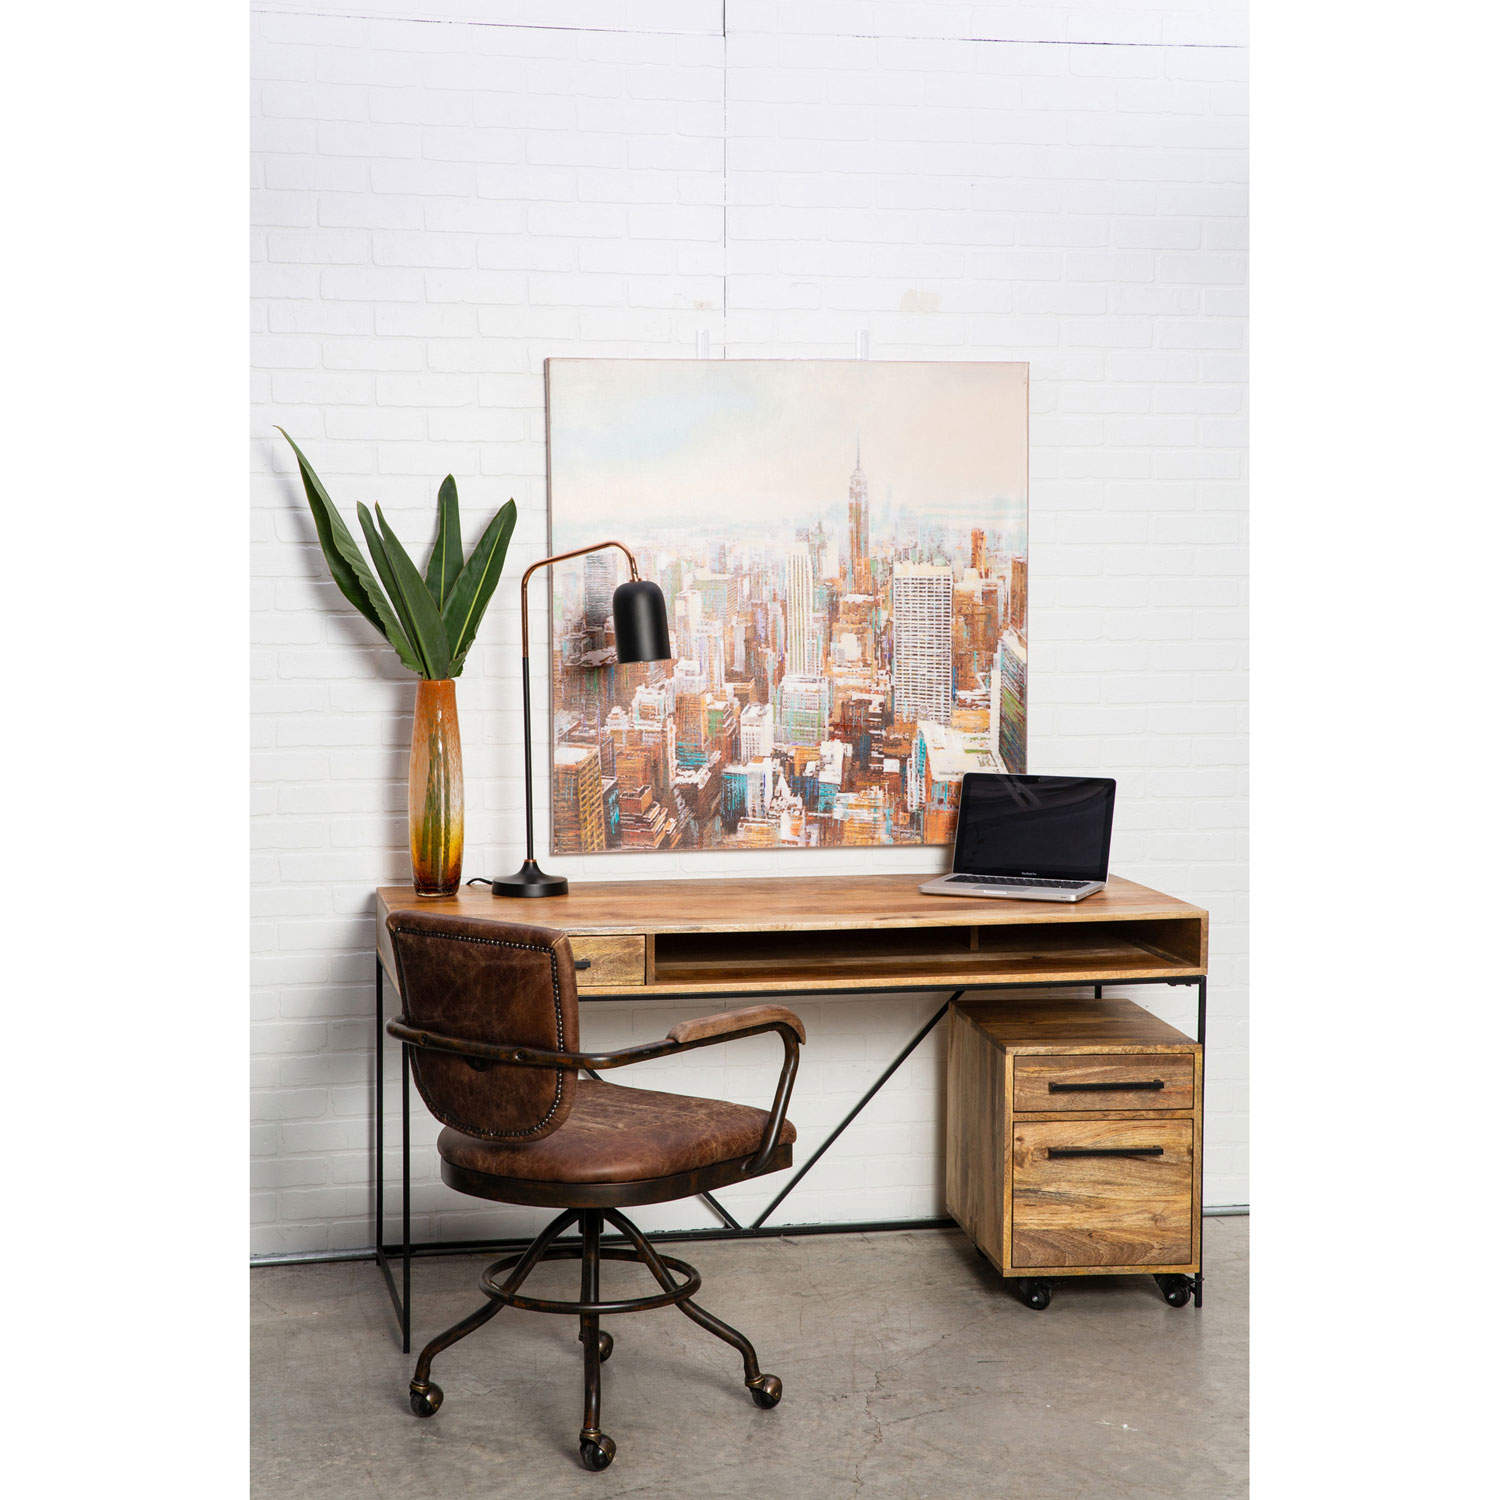 Colvin Contemporary Console Desk - Natural Mango Wood